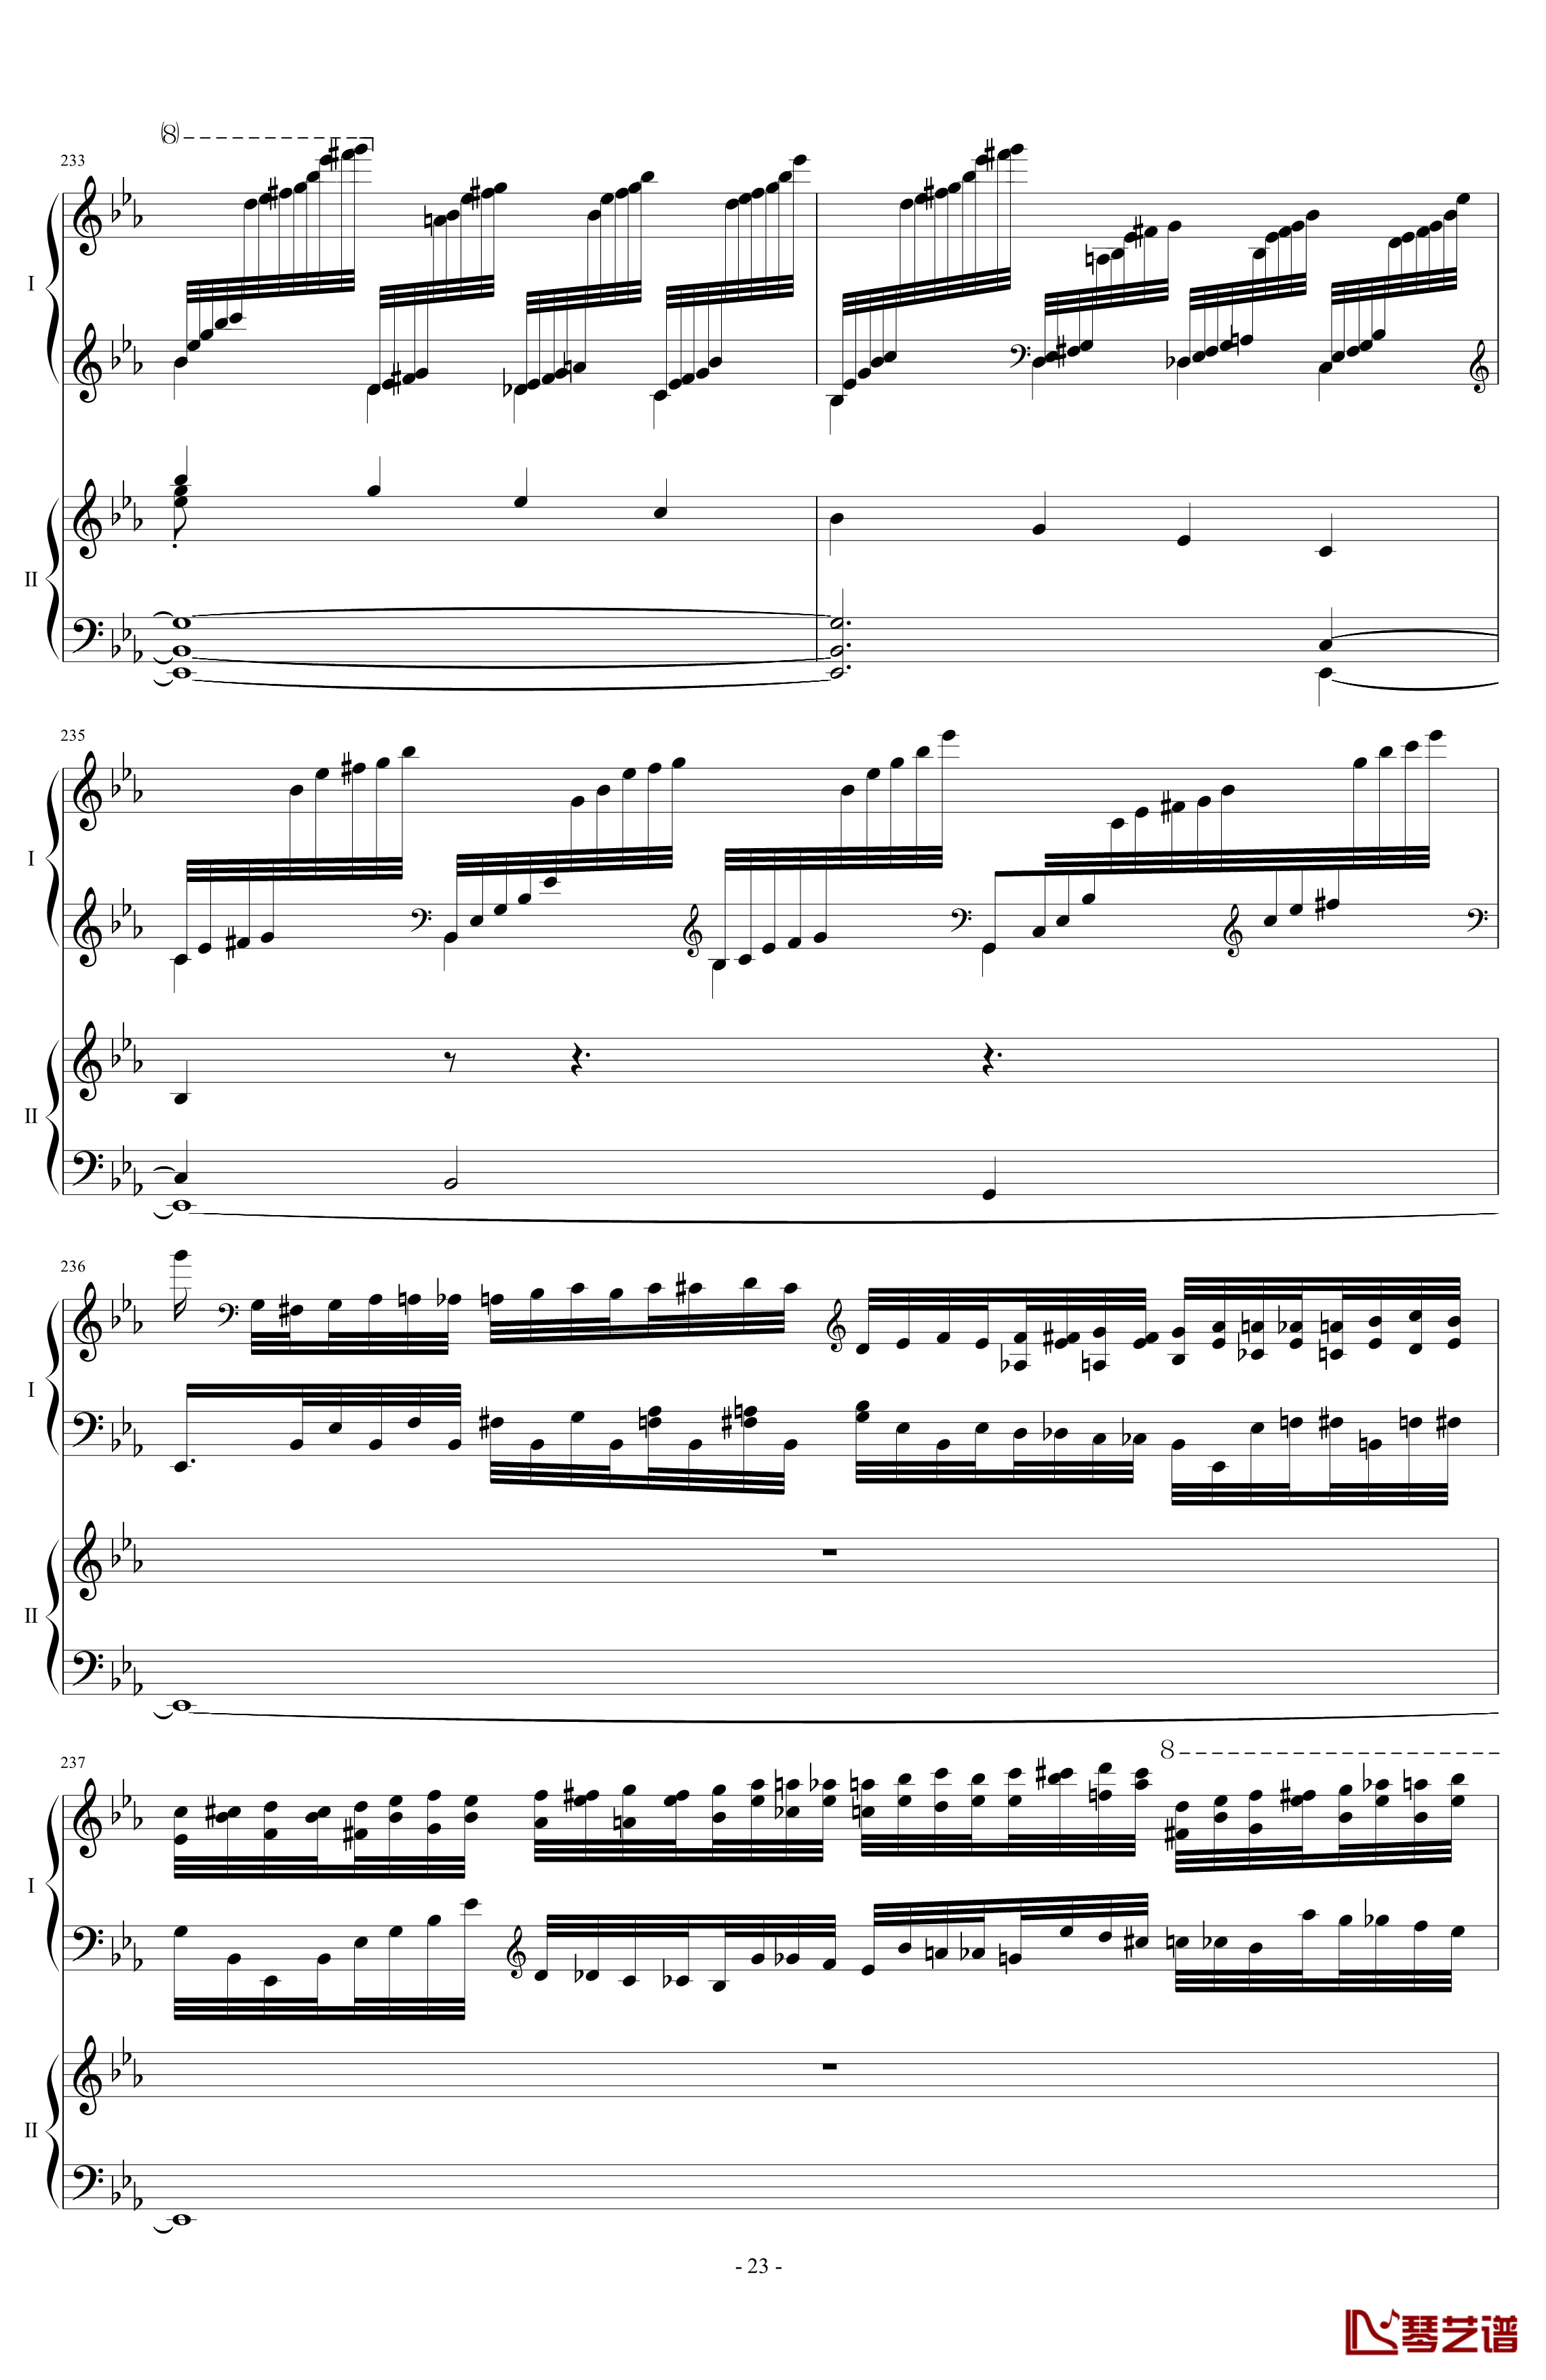 拉三第三乐章41页双钢琴钢琴谱-最难钢琴曲-拉赫马尼若夫23